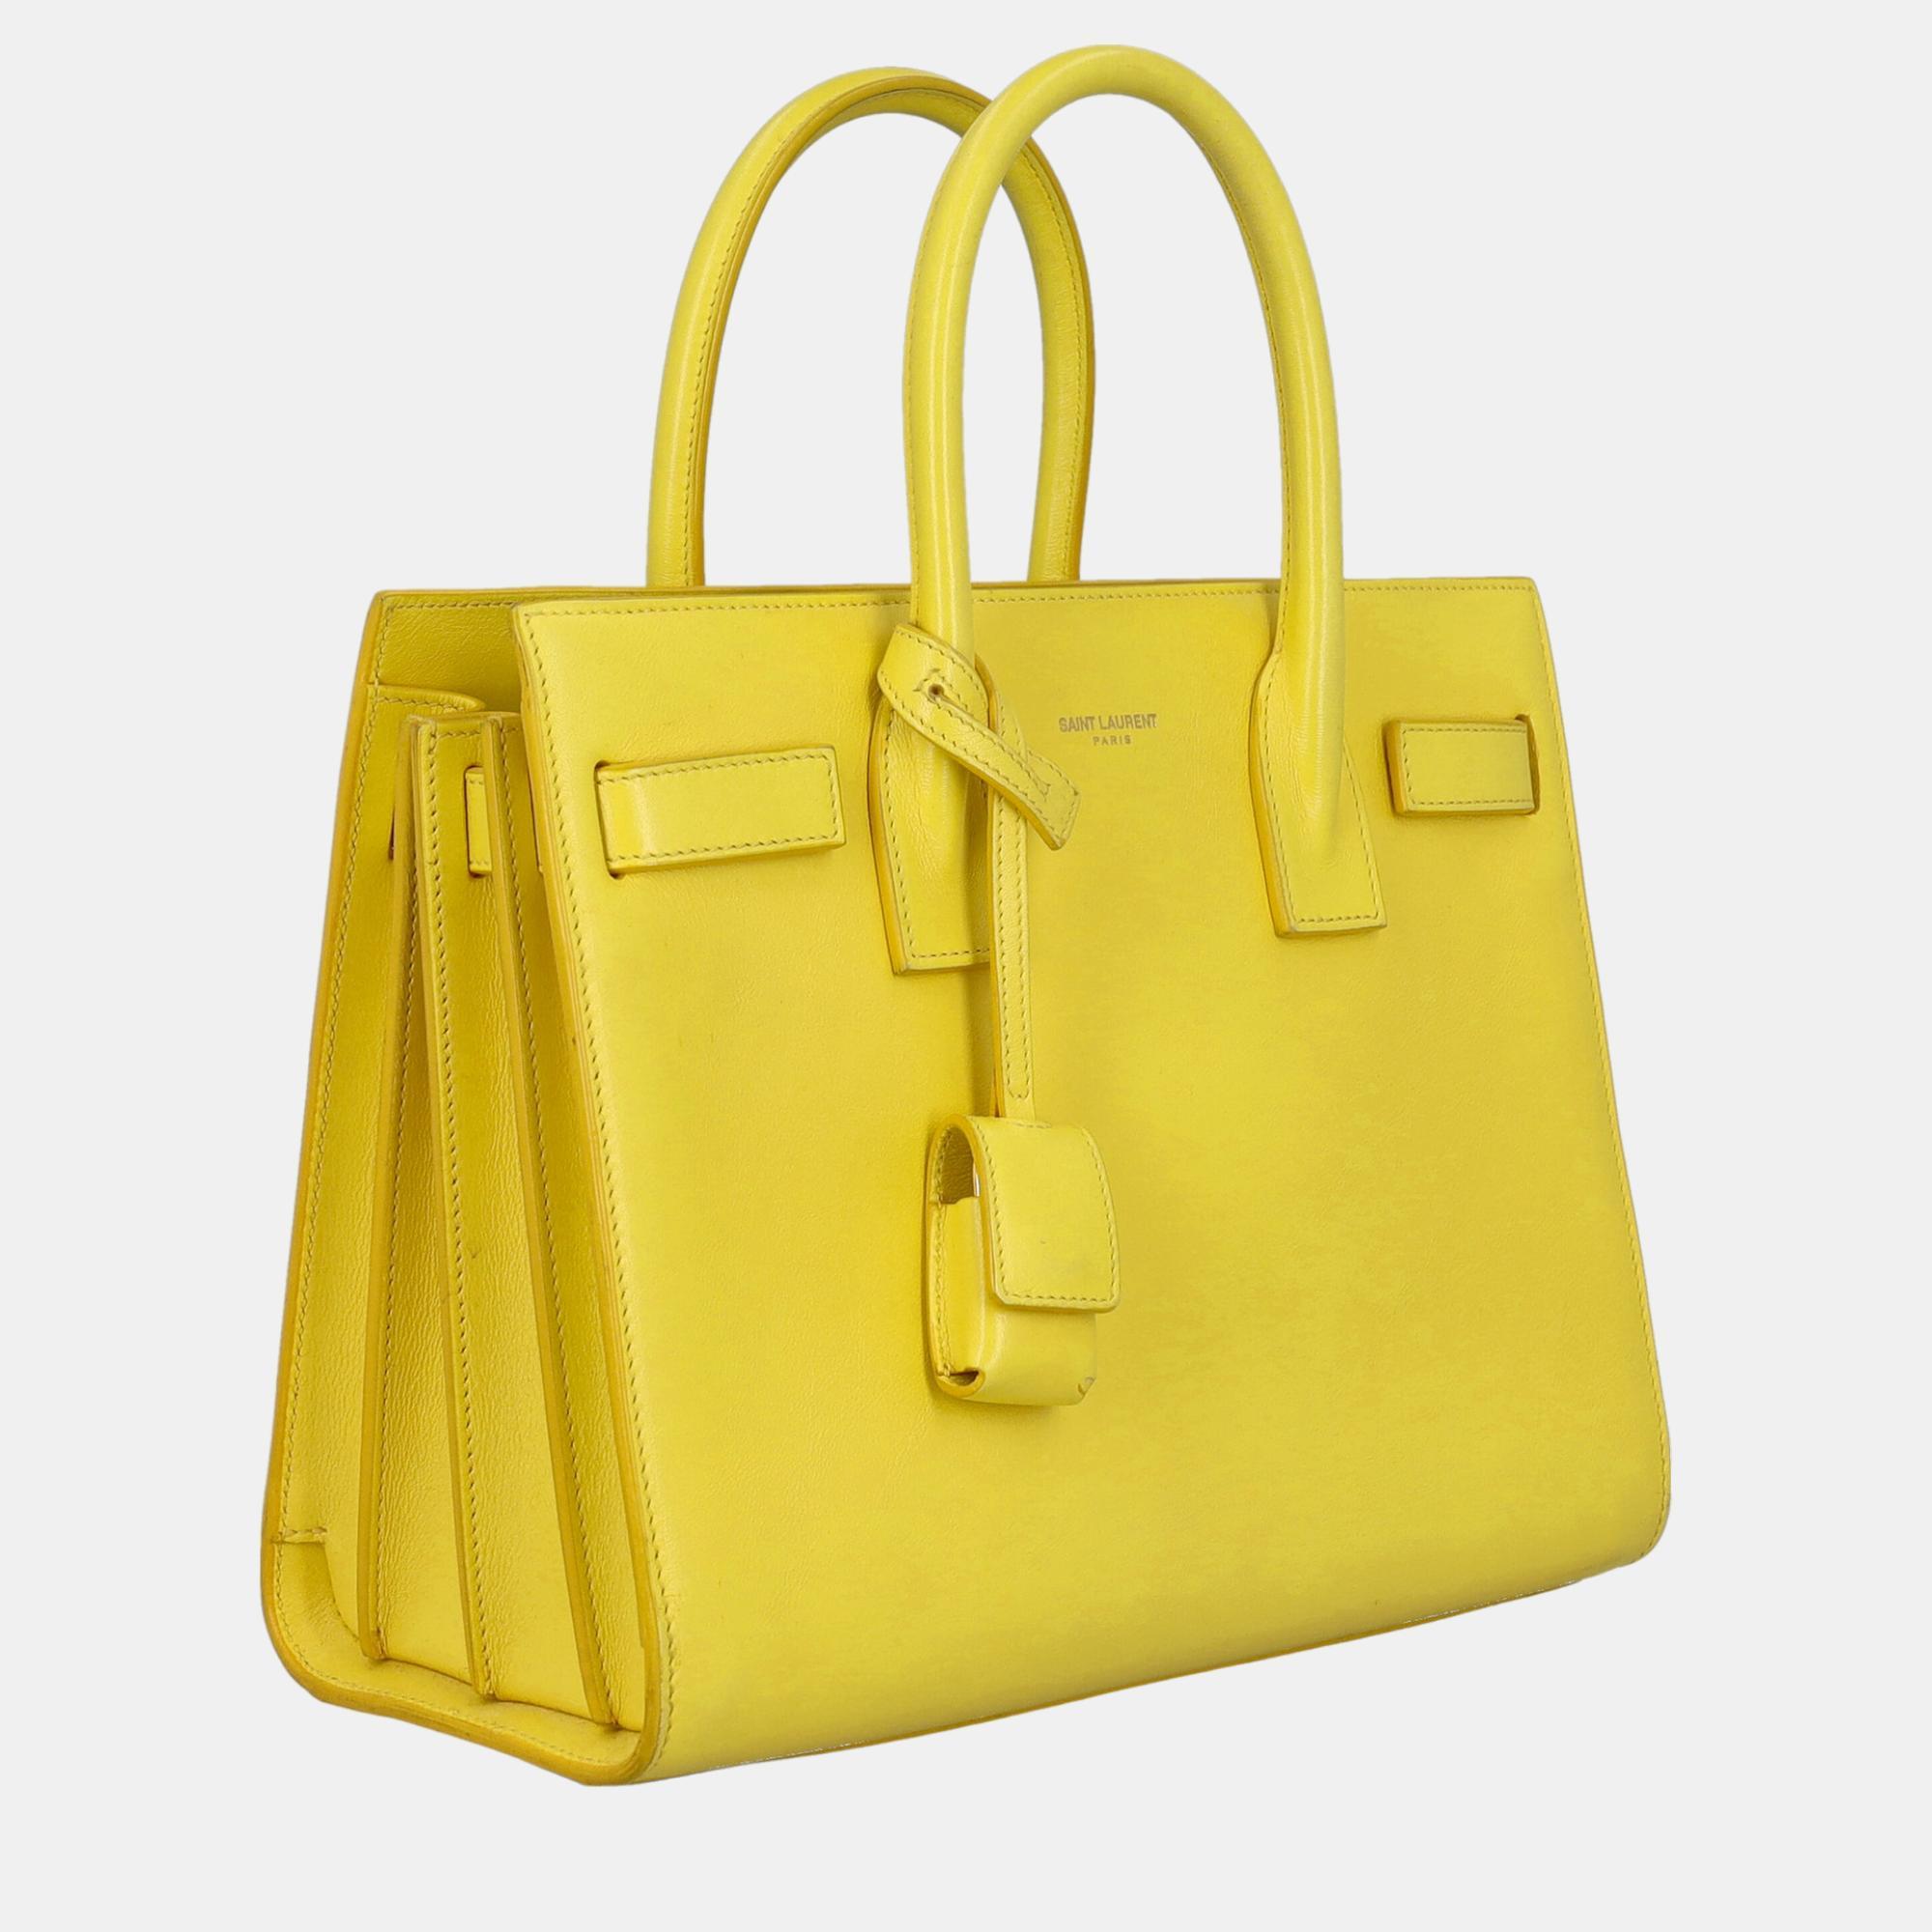 

Saint Laurent Sac De Jour - Women's Leather Tote Bag - Yellow